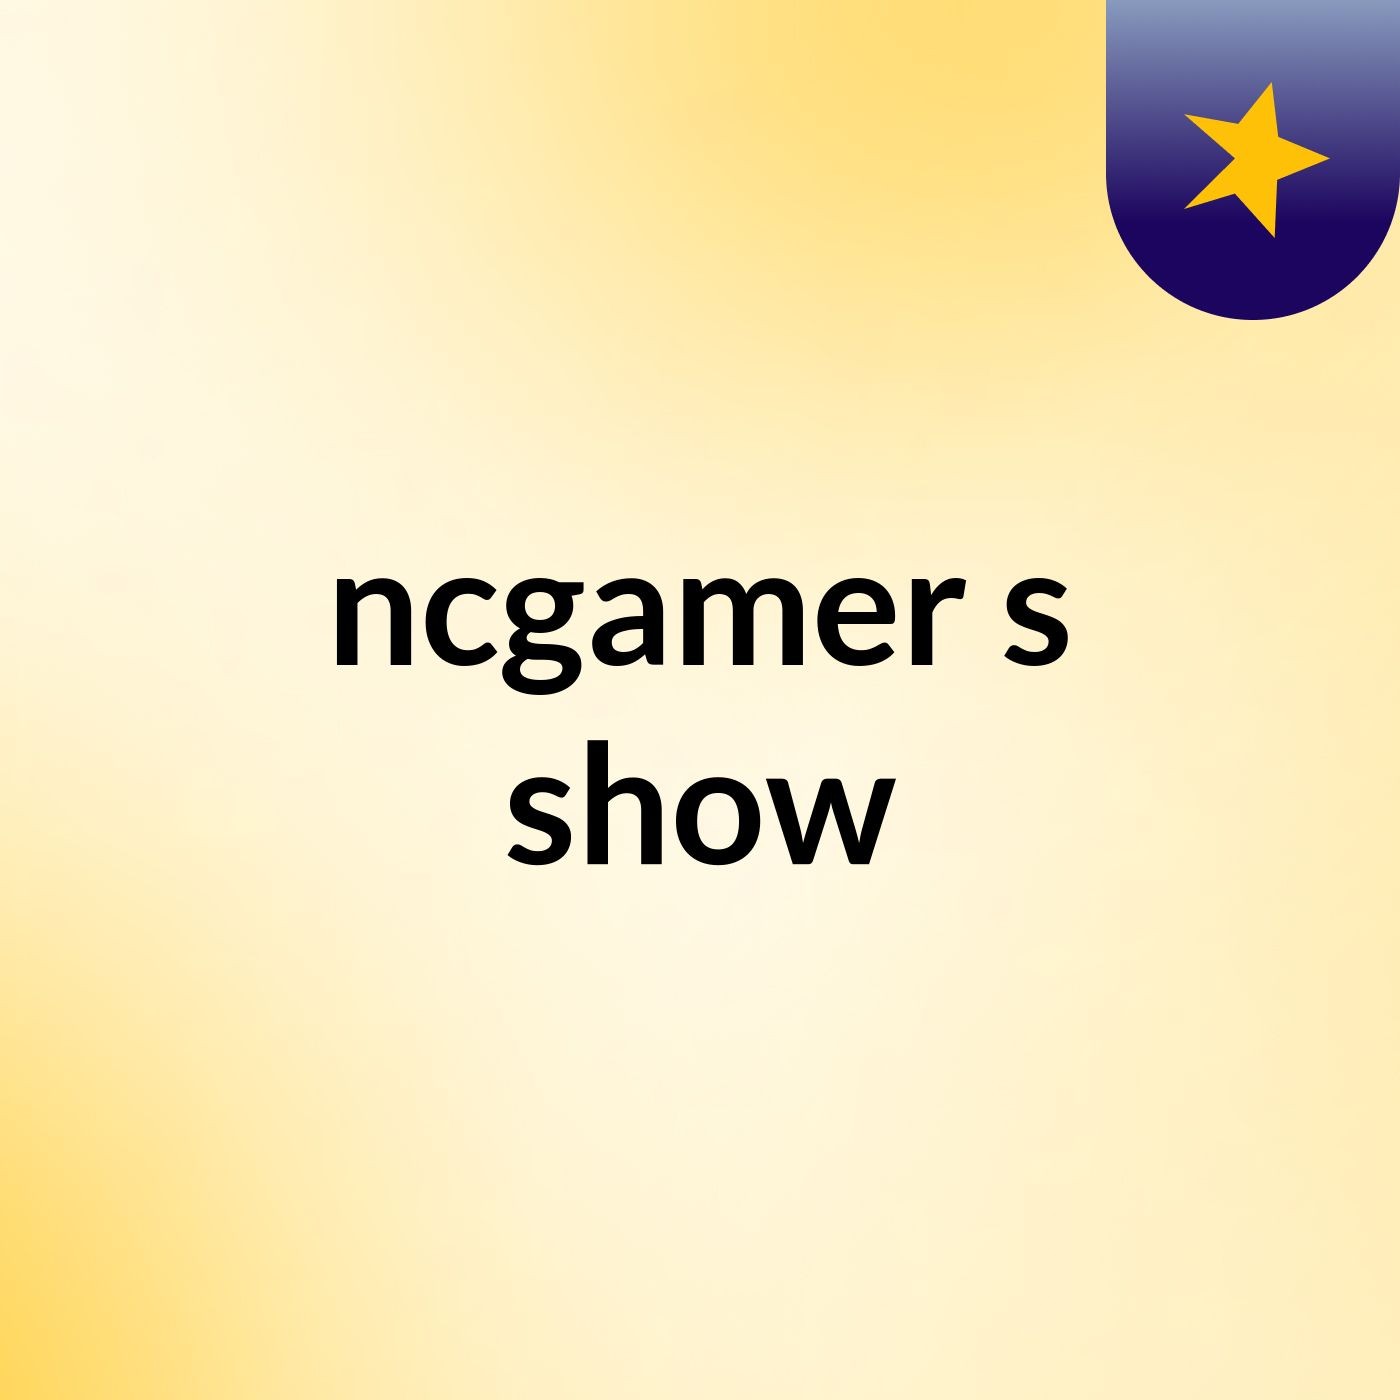 ncgamer's show